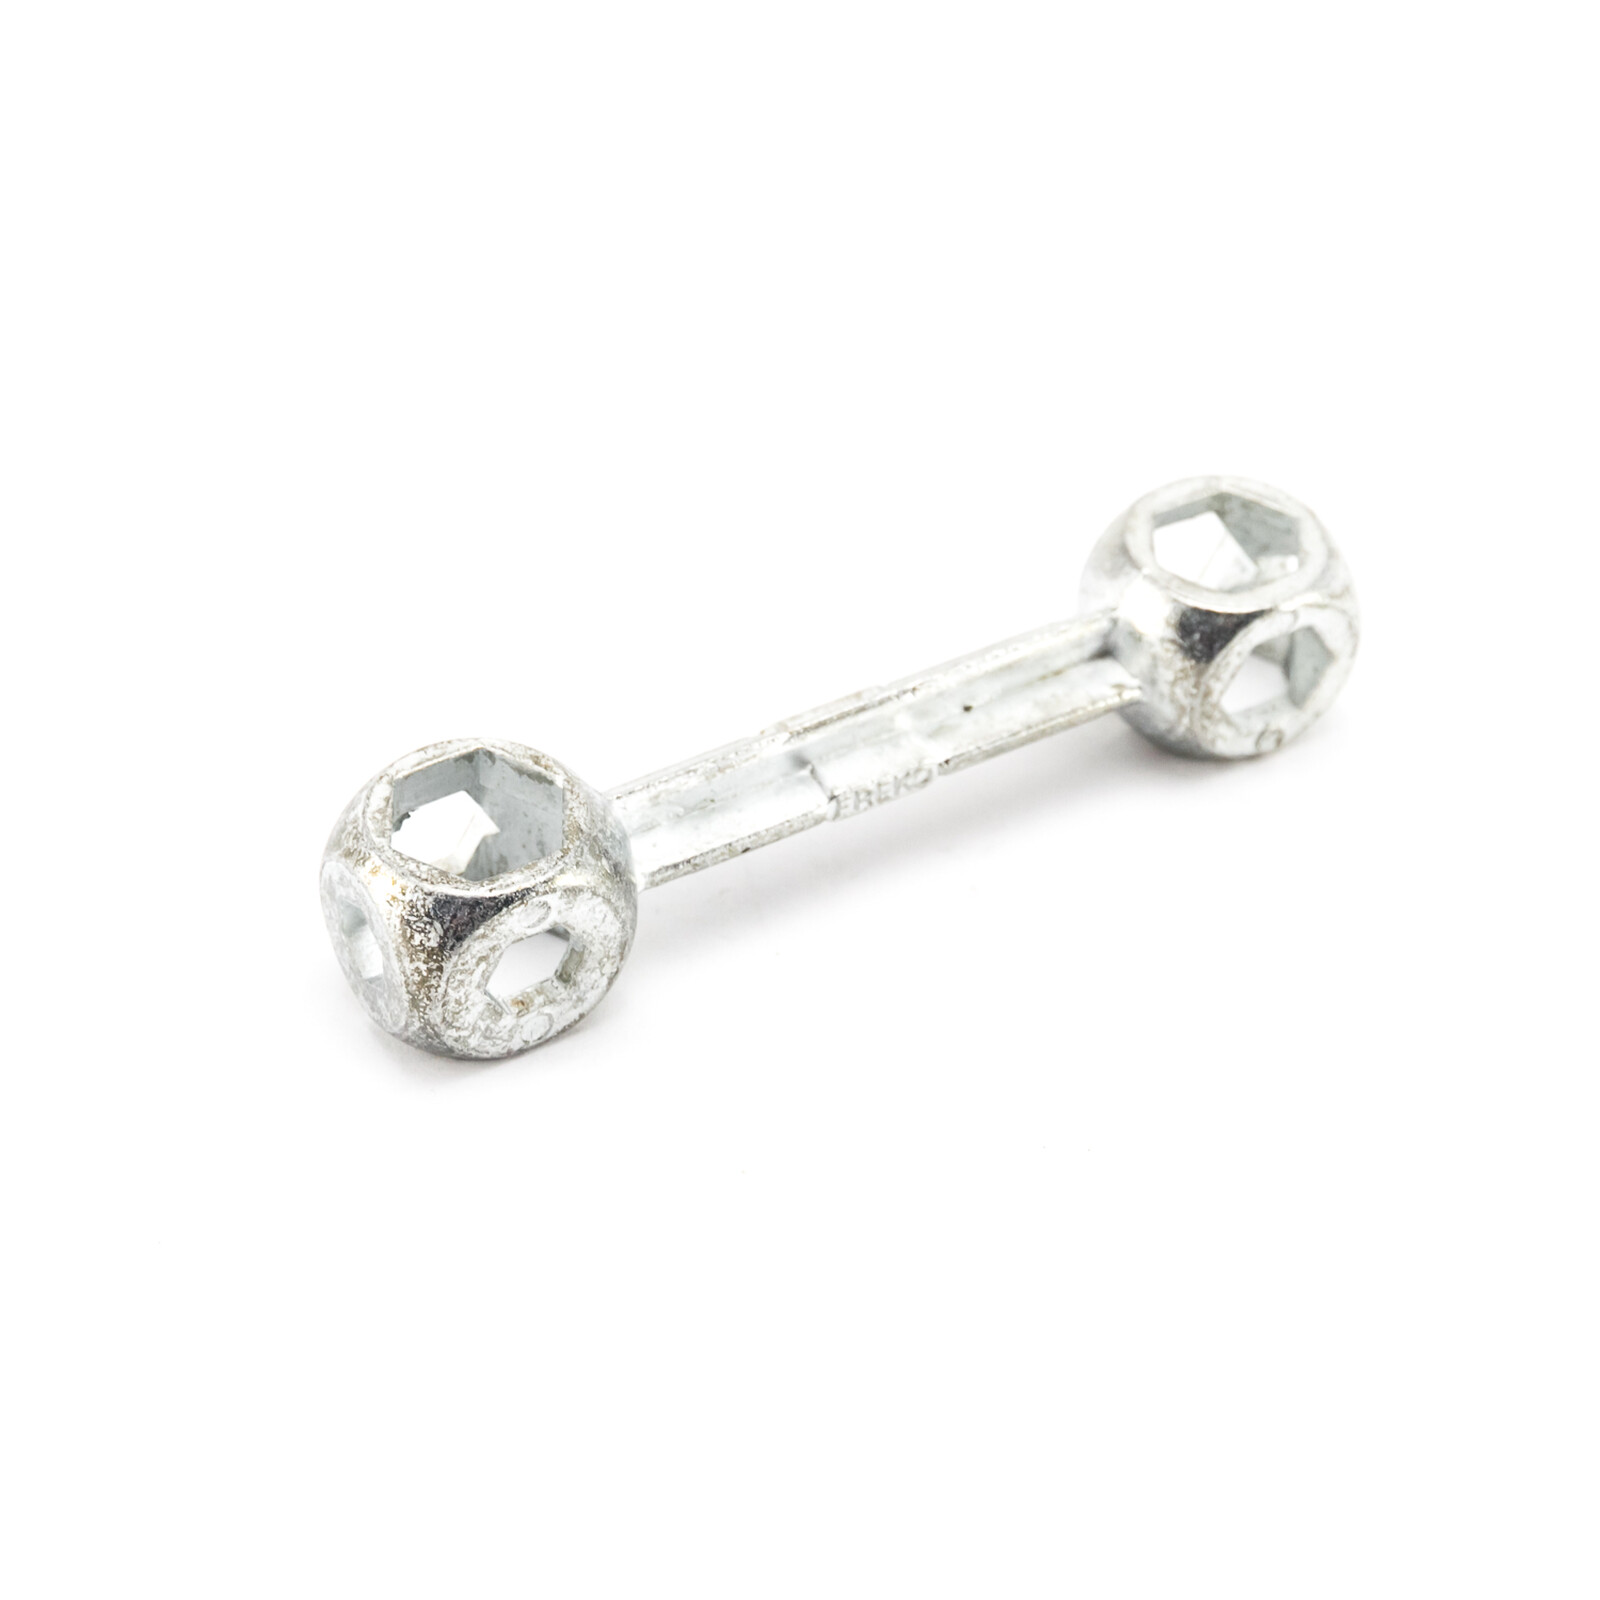 Fahrrad Knochen Schlüssel 10 Loch 6-15 mm Fahrrad Reparatur Werkzeug DDR Silber 